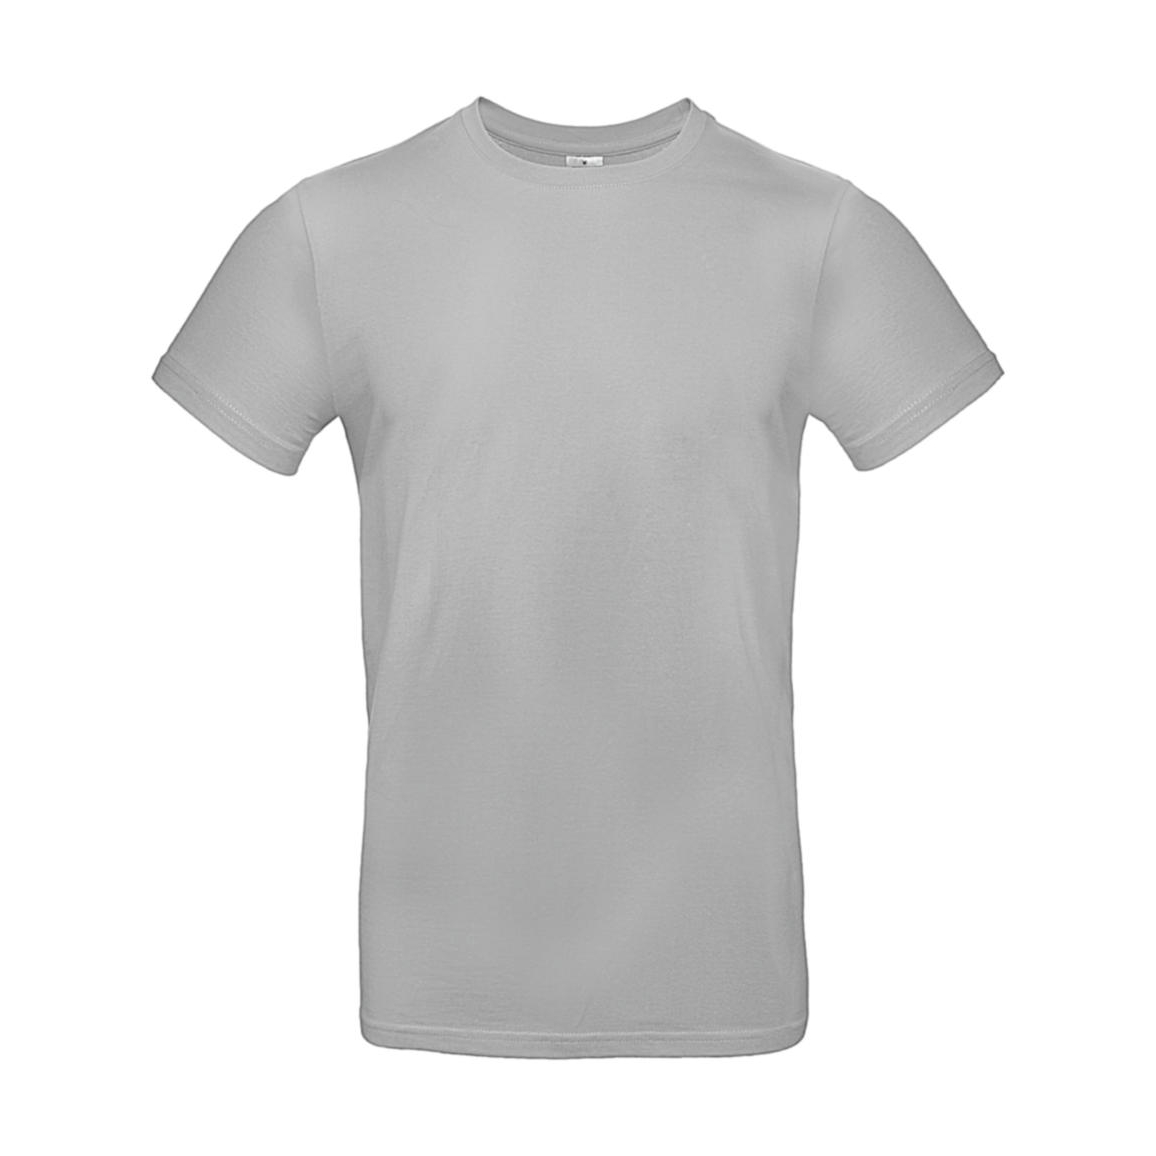 Triko pánské B&C E190 T-Shirt - šedé, XXL